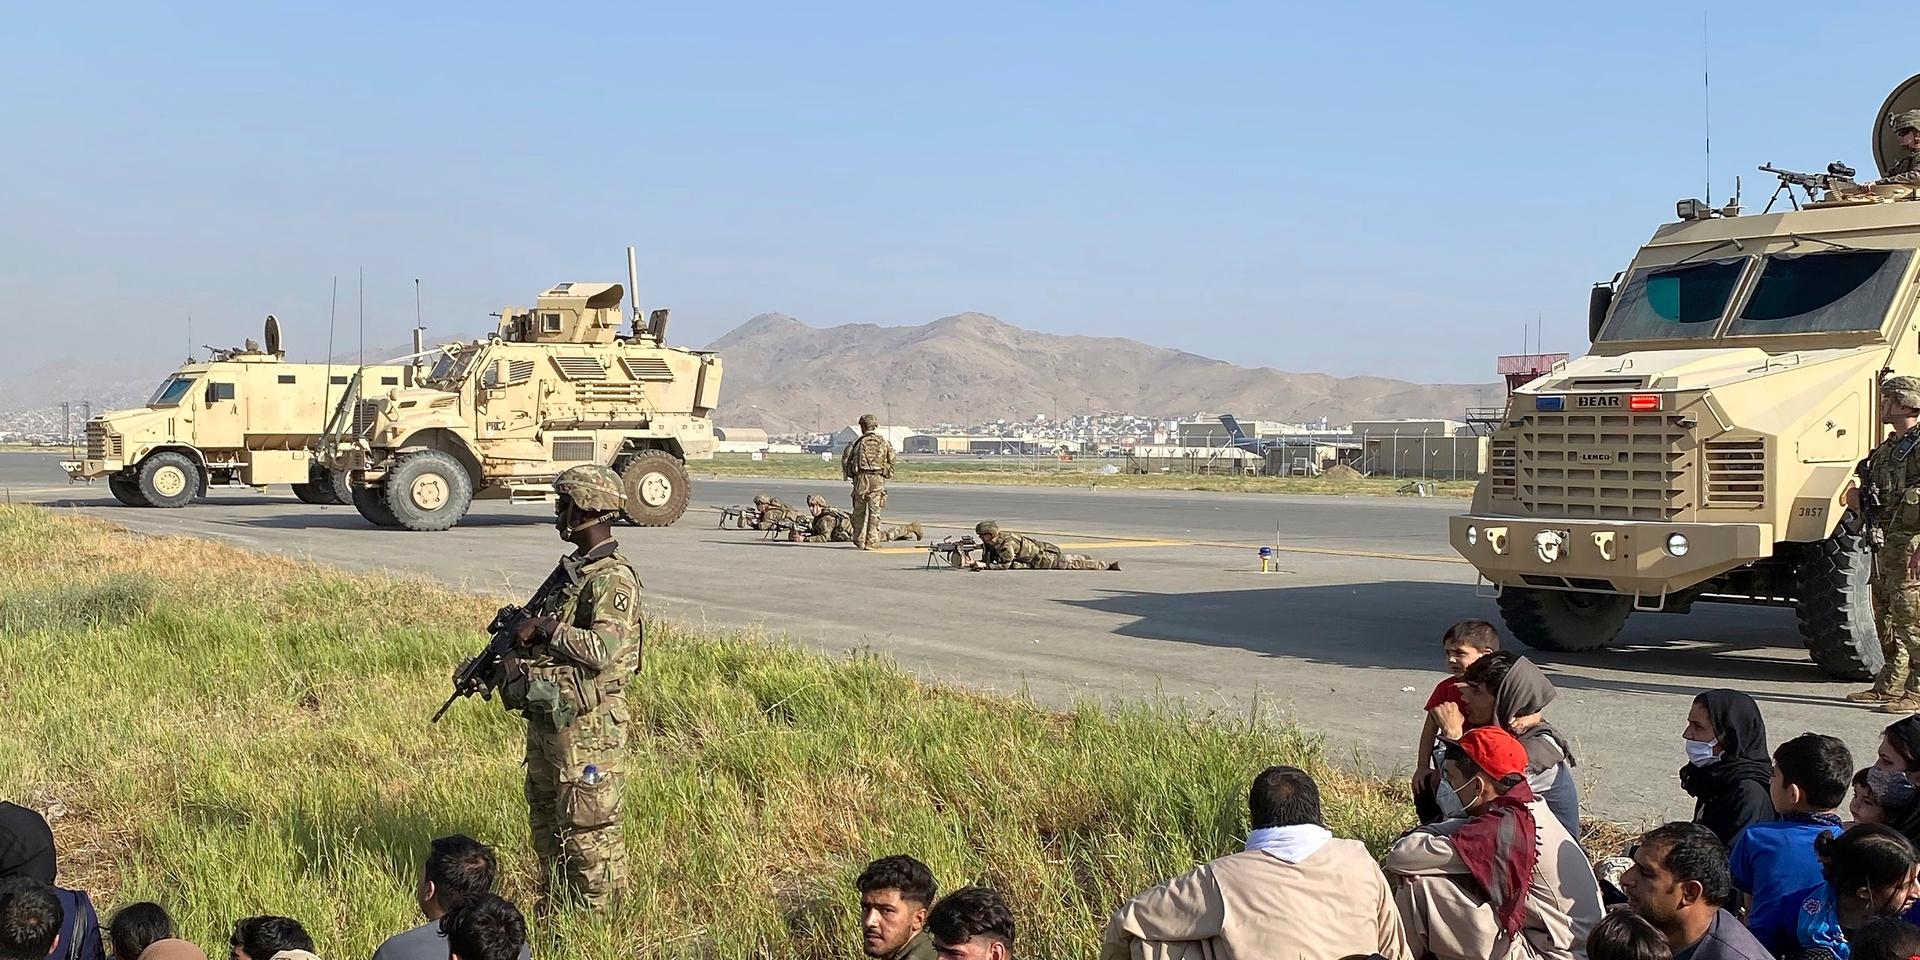 Amerikanska soldater vaktar den internationella flygplatsen i Kabul, där desperata afghaner försökte ta sig ombord på planen som lämnade landet efter talibanernas maktövertagande.